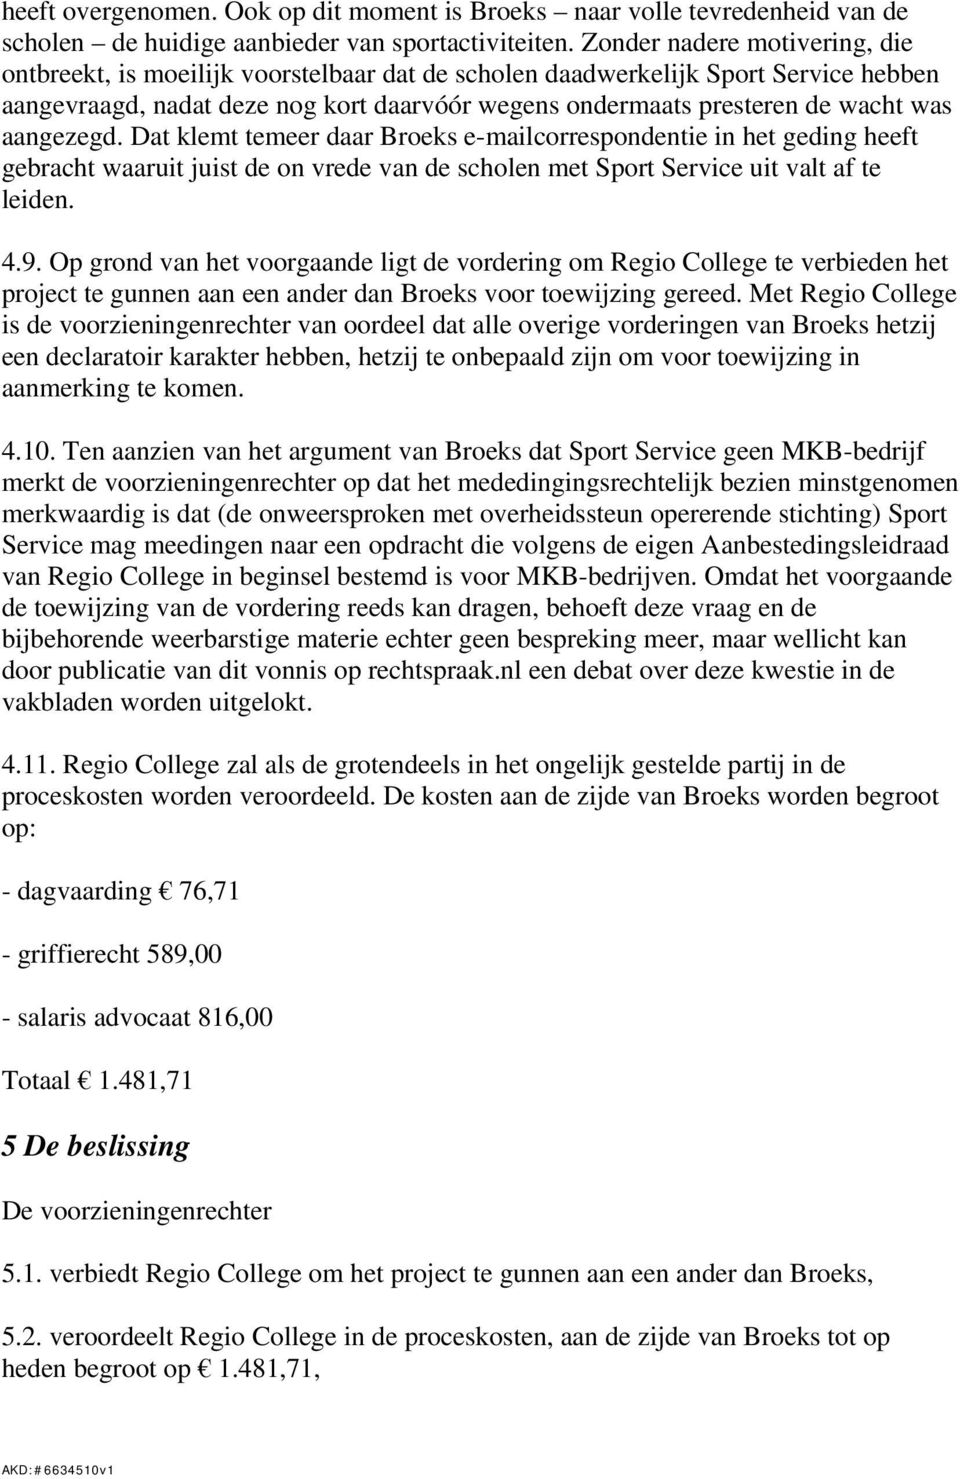 aangezegd. Dat klemt temeer daar Broeks e-mailcorrespondentie in het geding heeft gebracht waaruit juist de on vrede van de scholen met Sport Service uit valt af te leiden. 4.9.